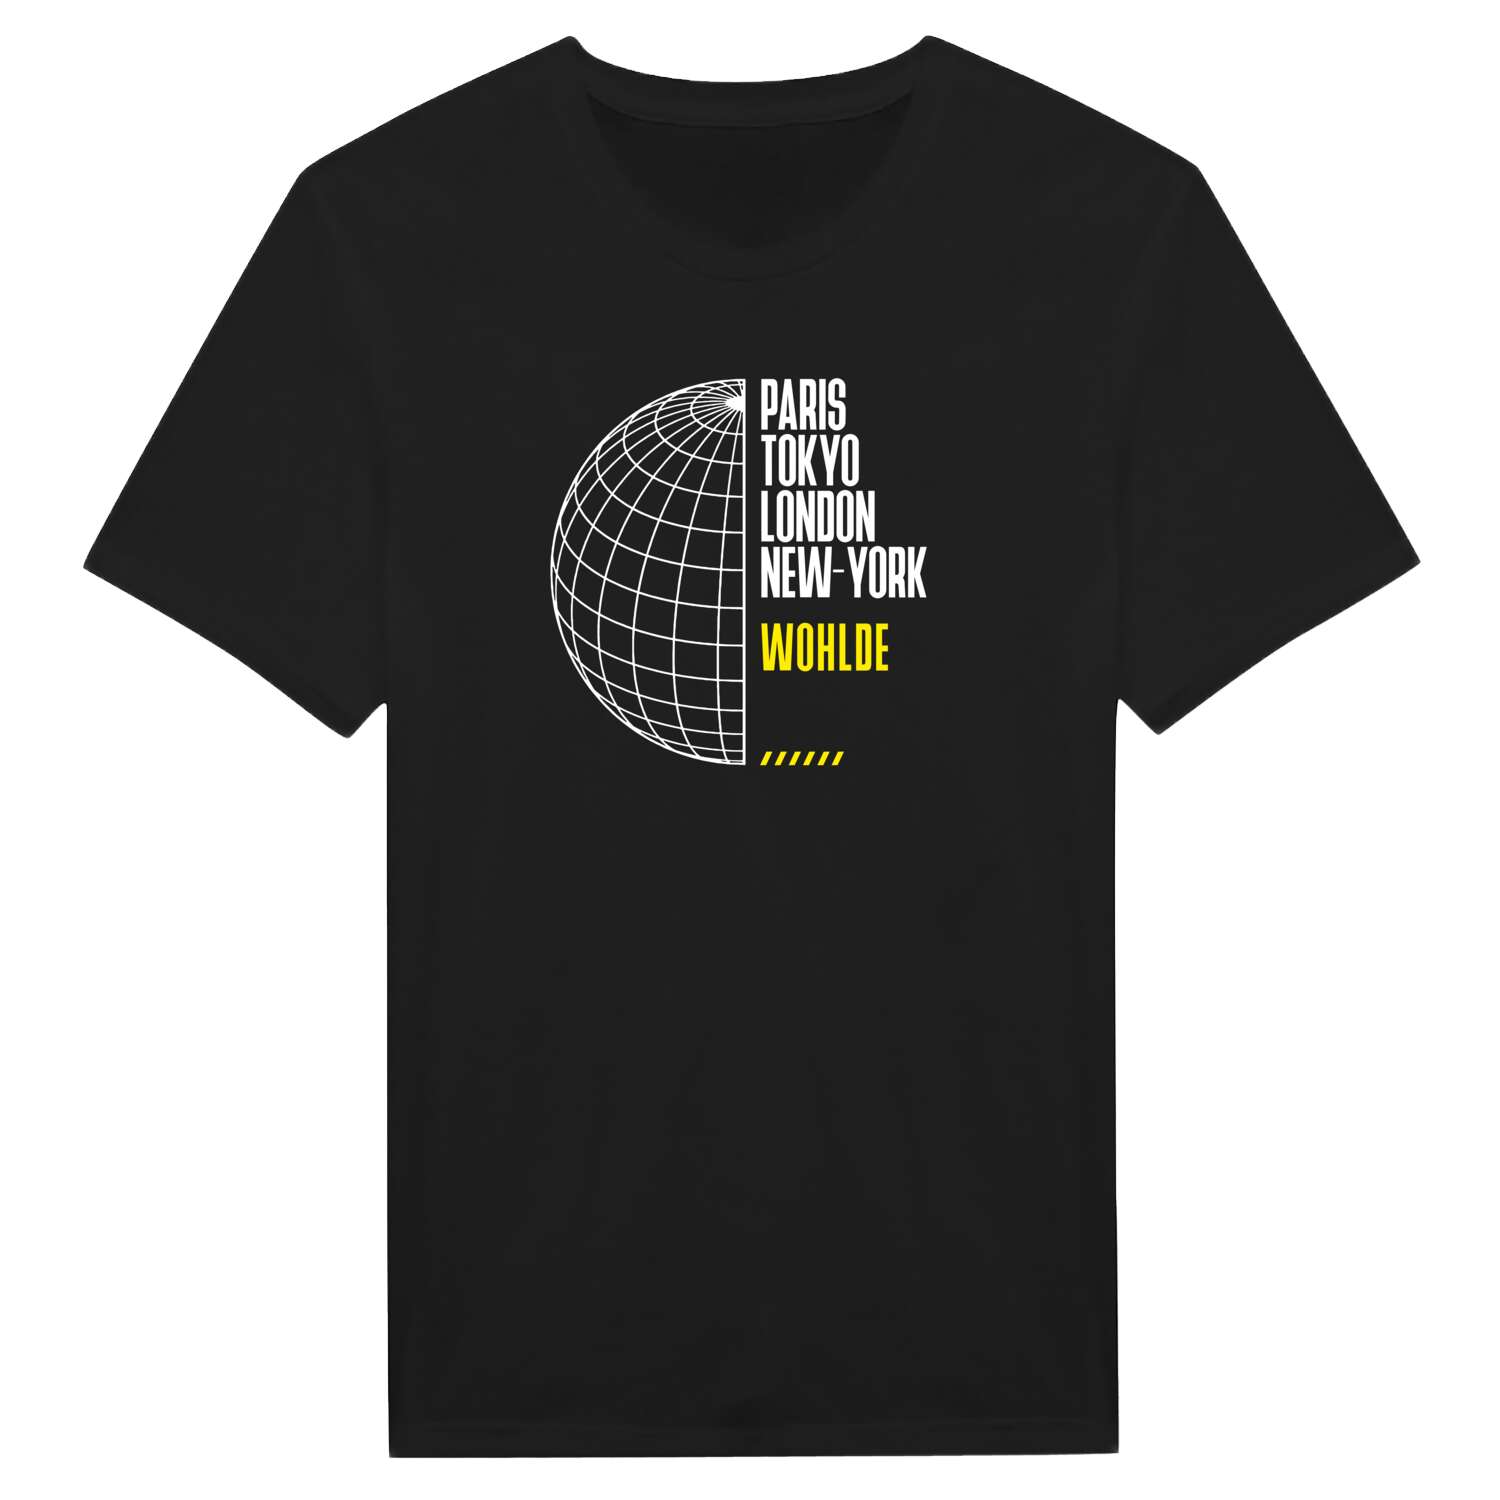 Wohlde T-Shirt »Paris Tokyo London«